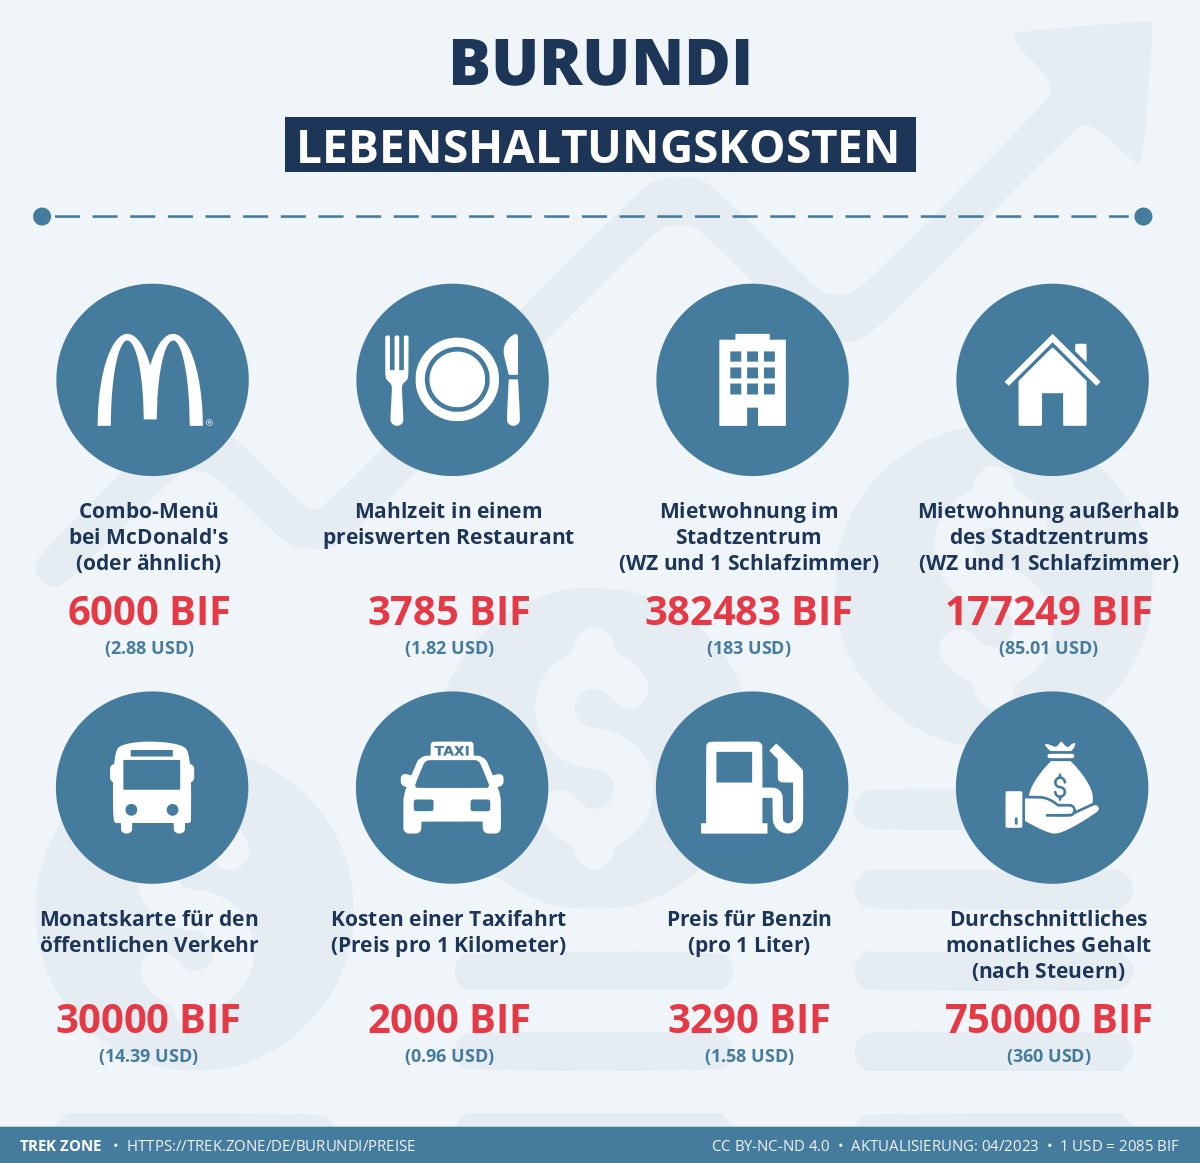 preise und lebenskosten burundi